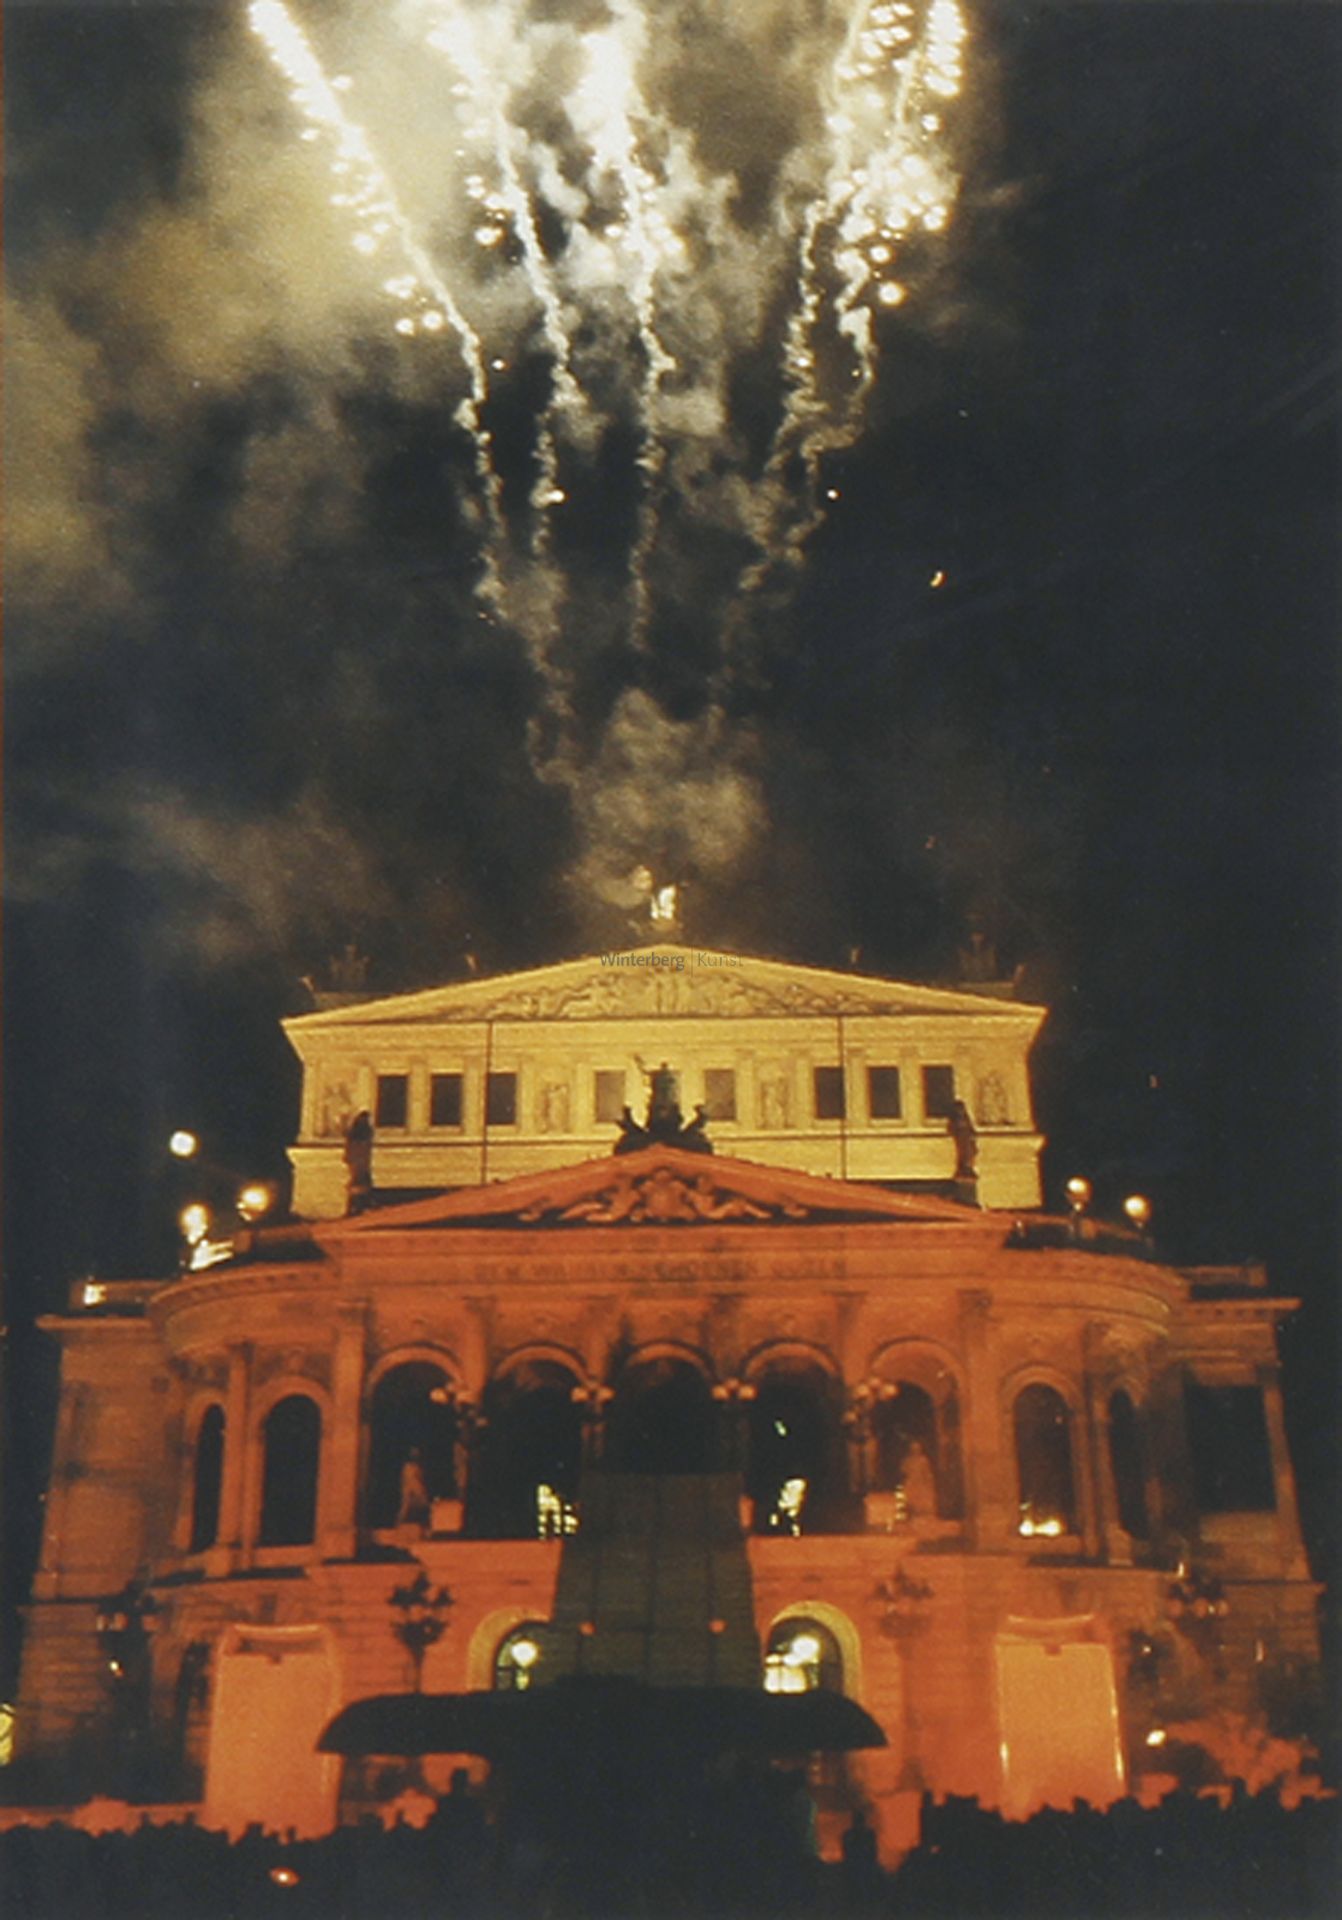 HELMUT R. SCHULZE: Frankfurt/Main: Alte Oper in Flammen.